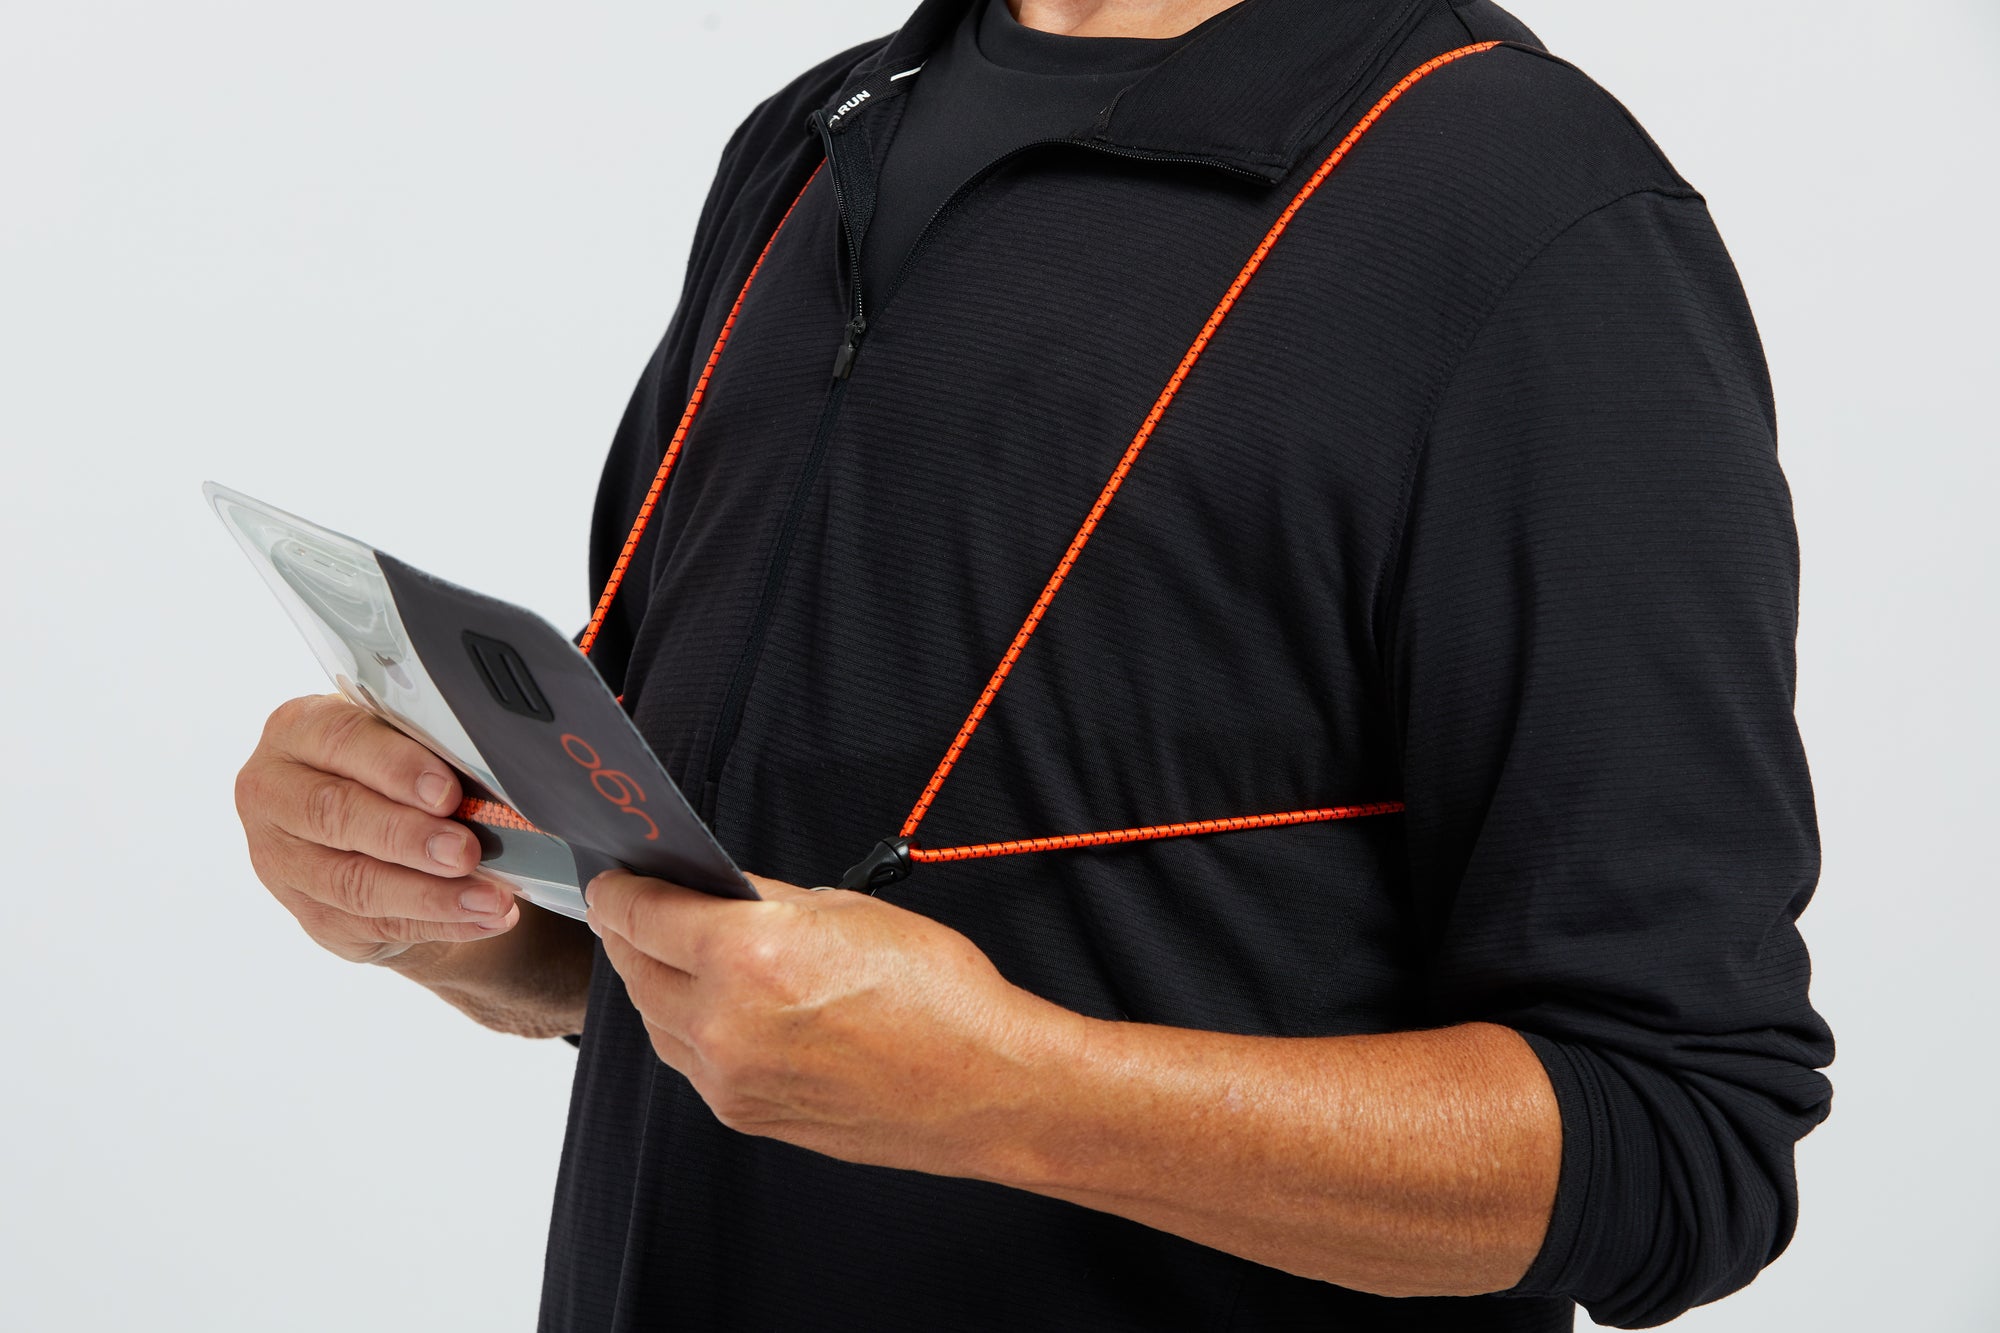 ugo ultralight harness orange and black